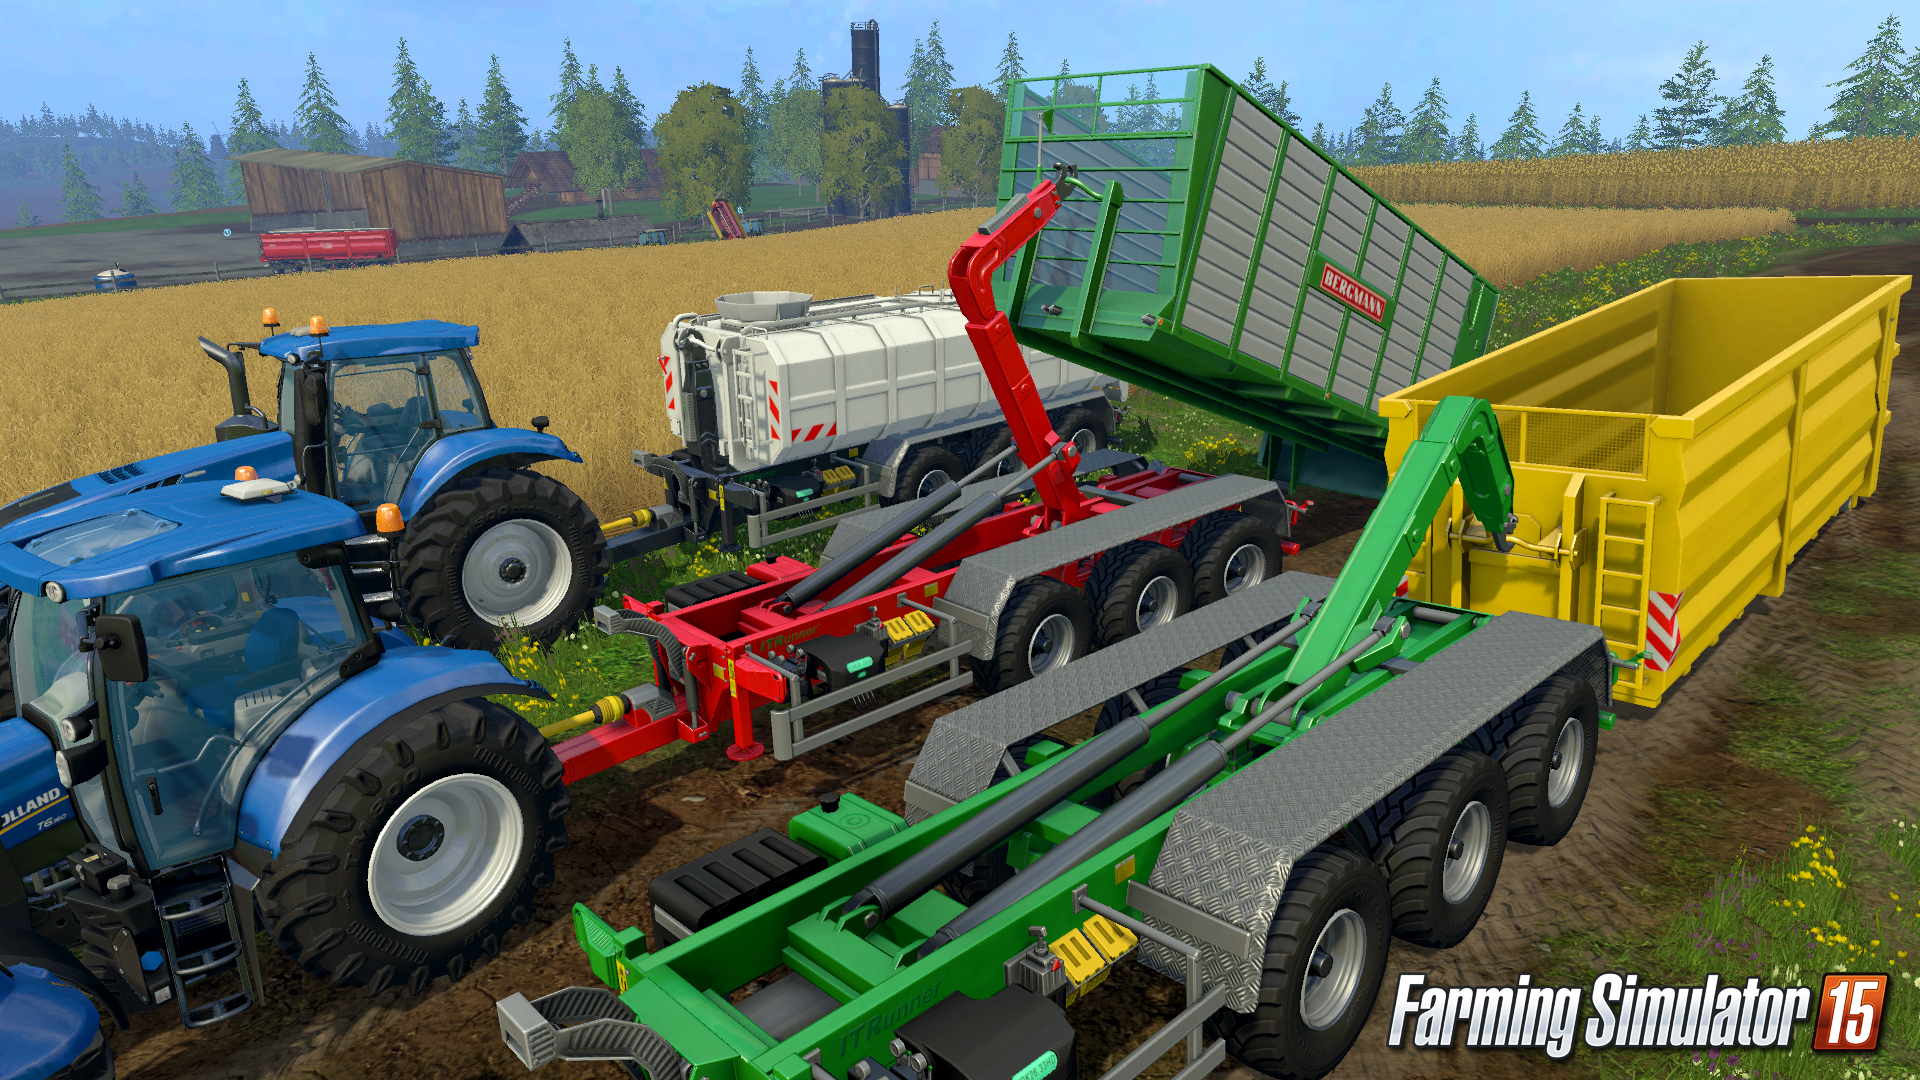 Farming simulator free full download